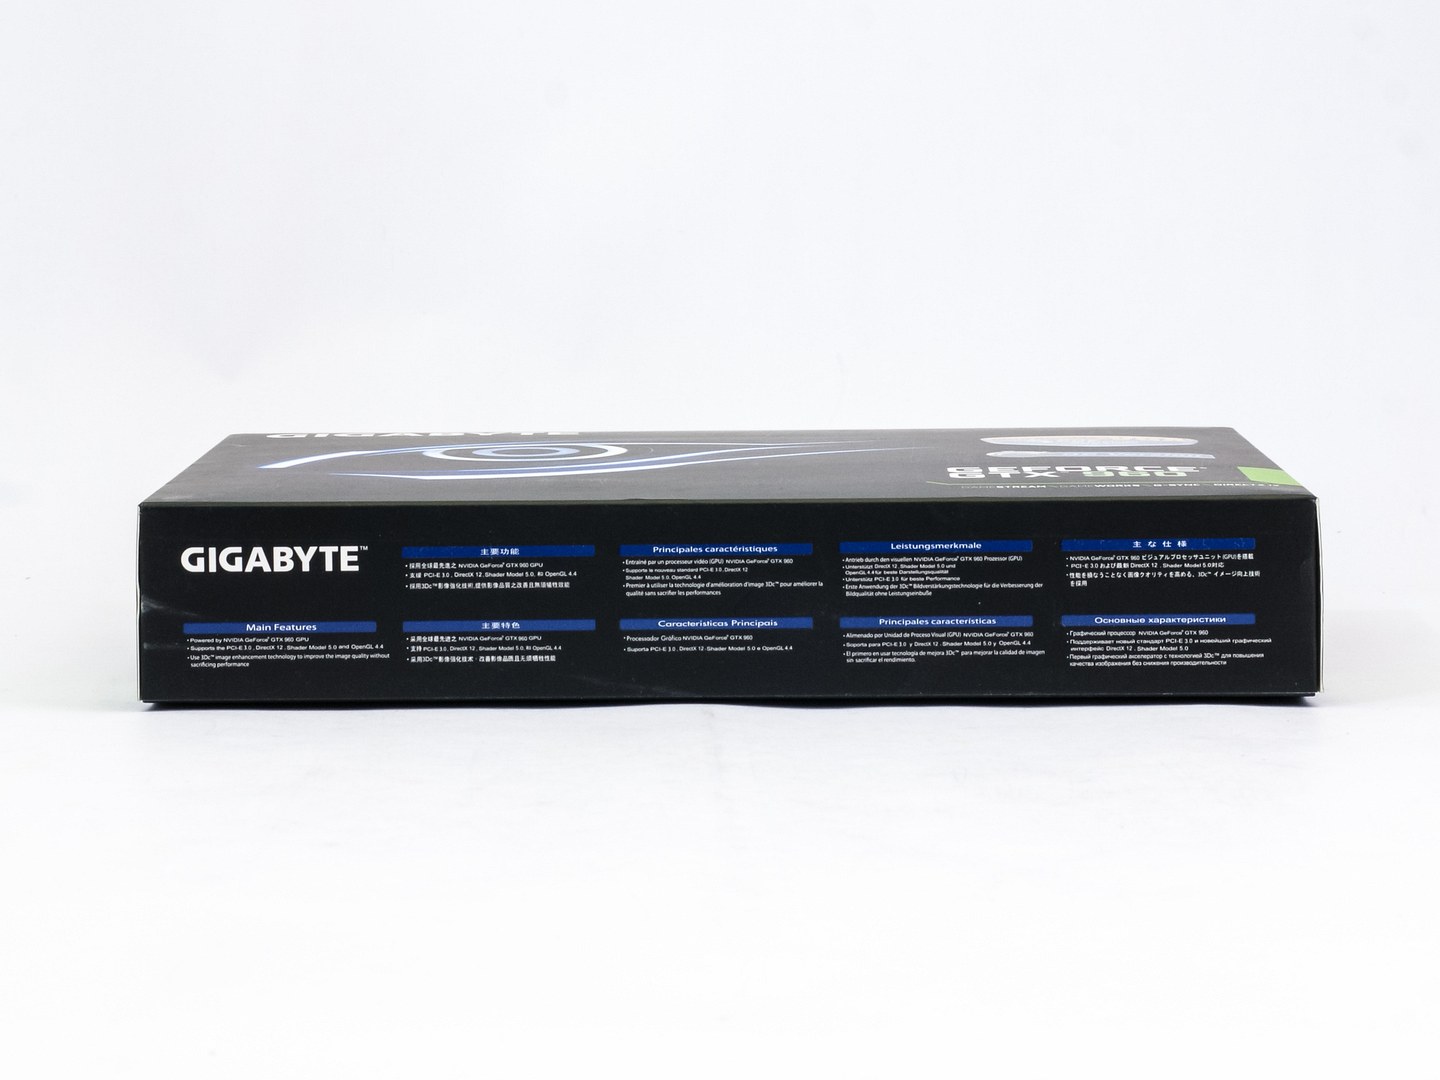 Co za šest tisíc: 2× Gigabyte GTX 960 vs. MSI R9 280 Gaming